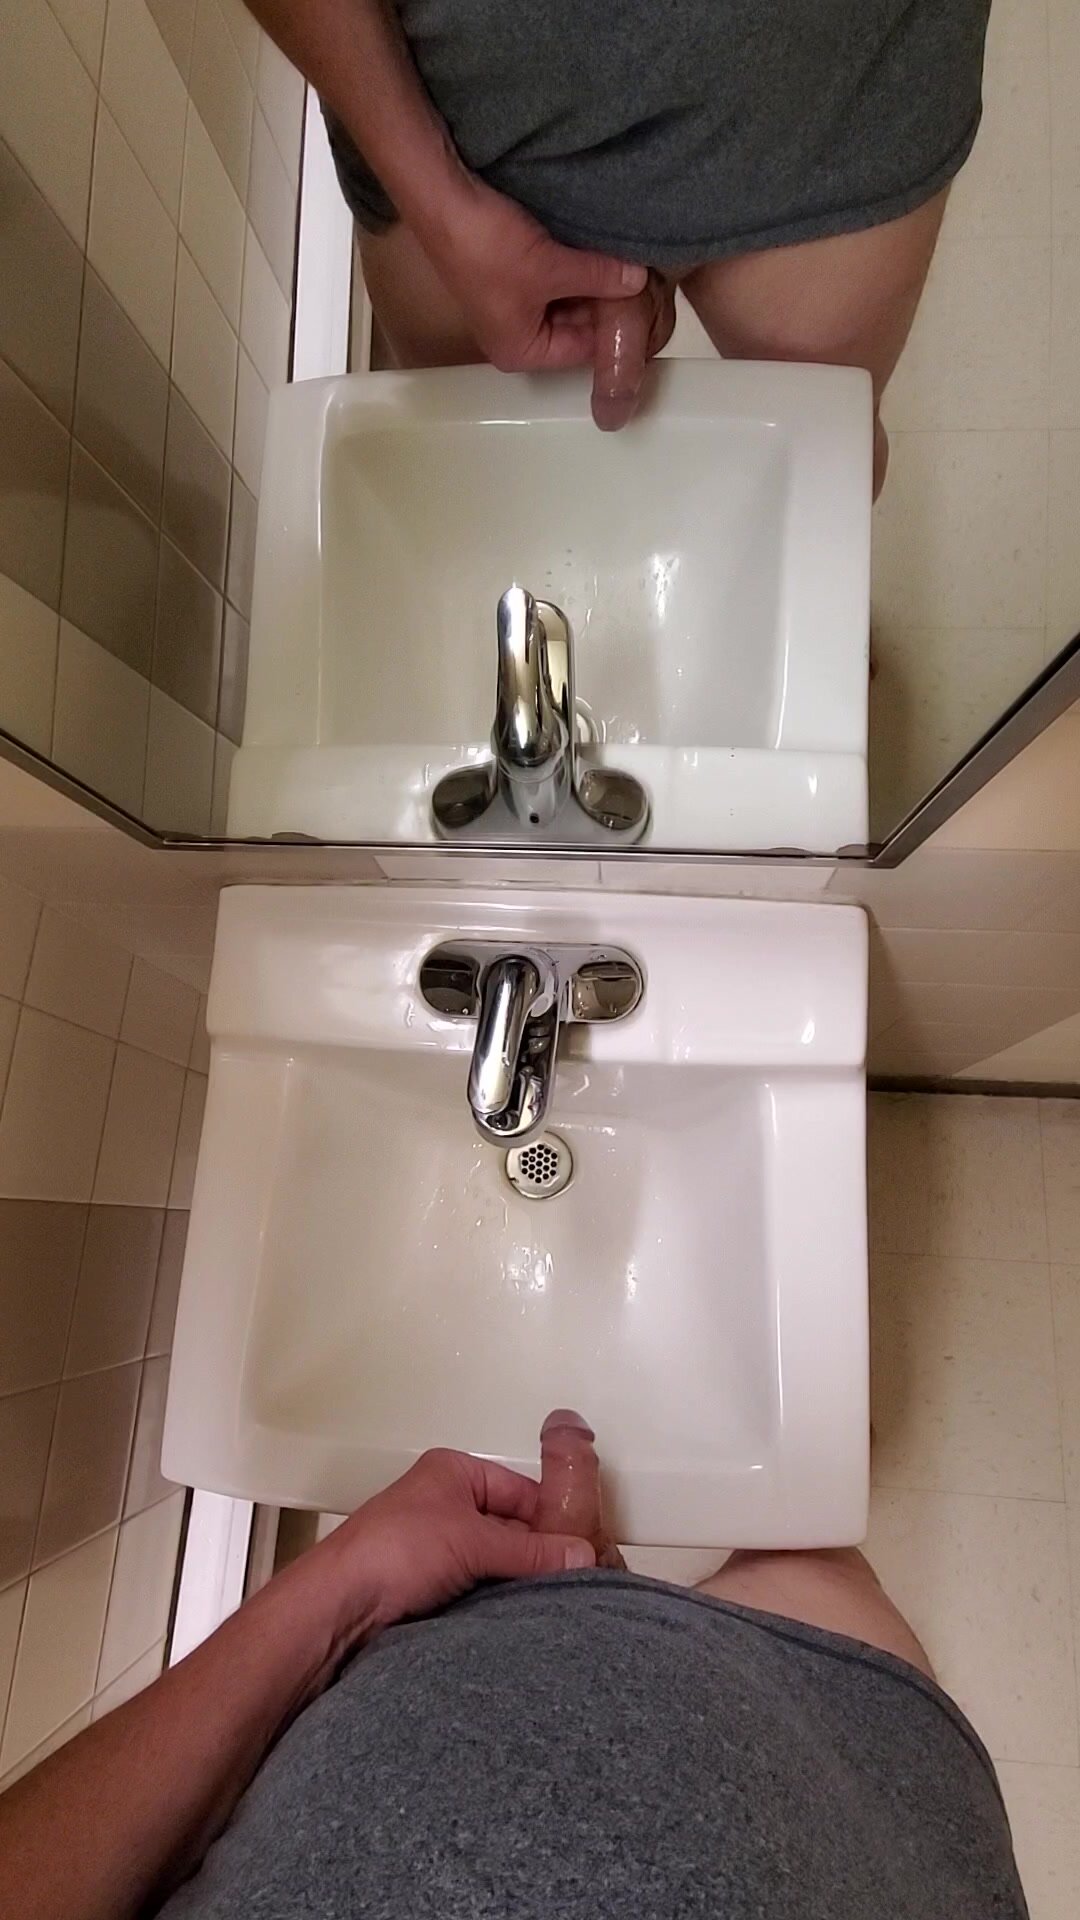 Public washroom pee and cum 2